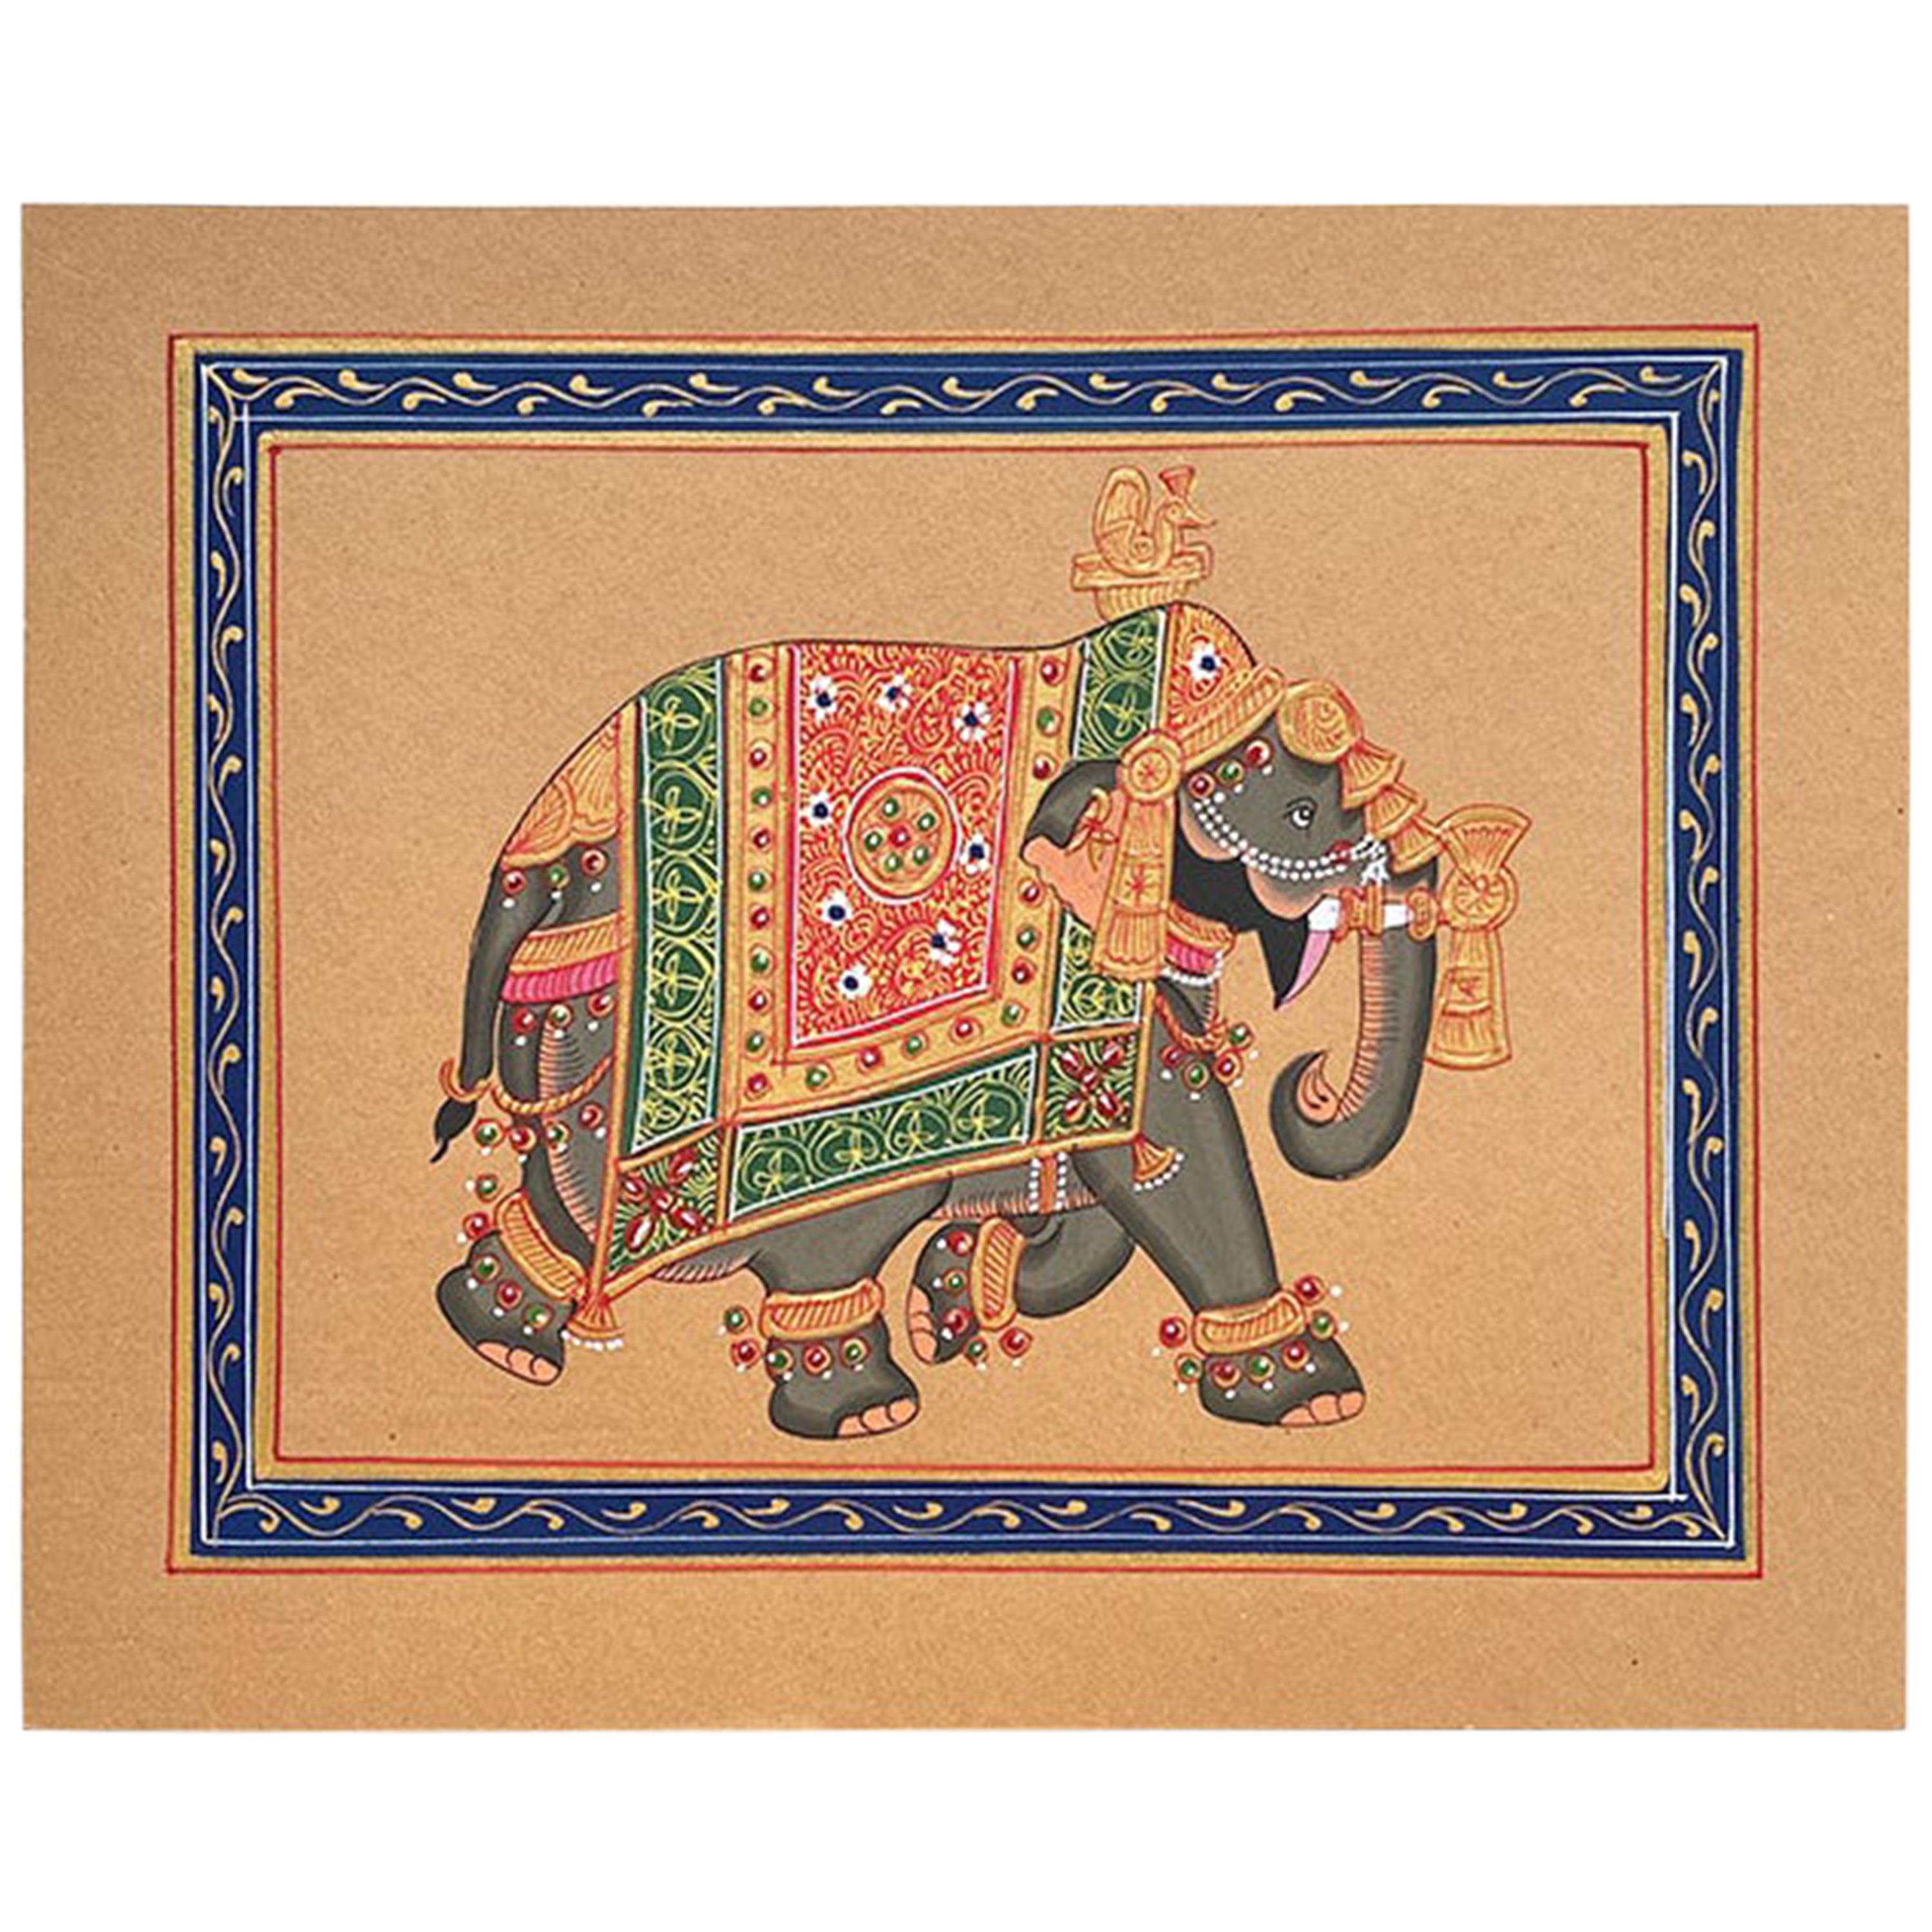 Handbemalter Elefant in Gold Regalia auf Papier, Indien